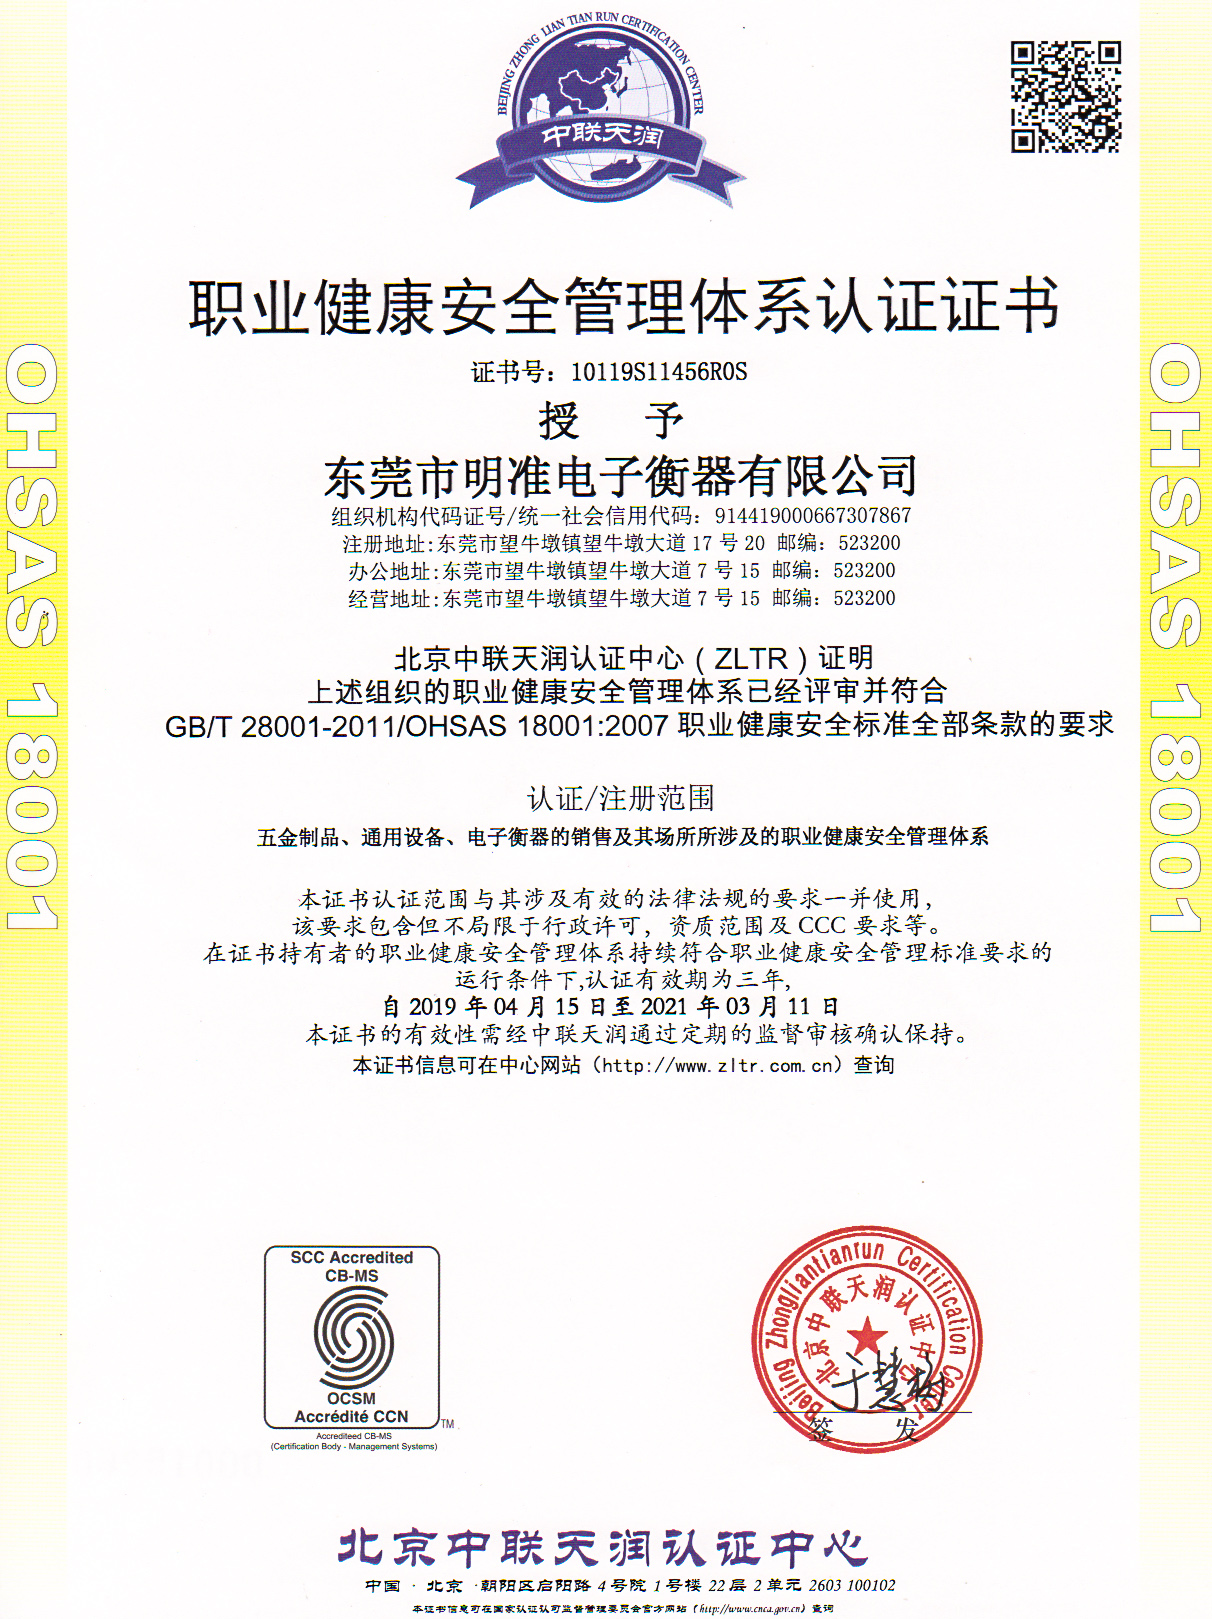 职业健康安全管理体系认证证书OHSAS18001